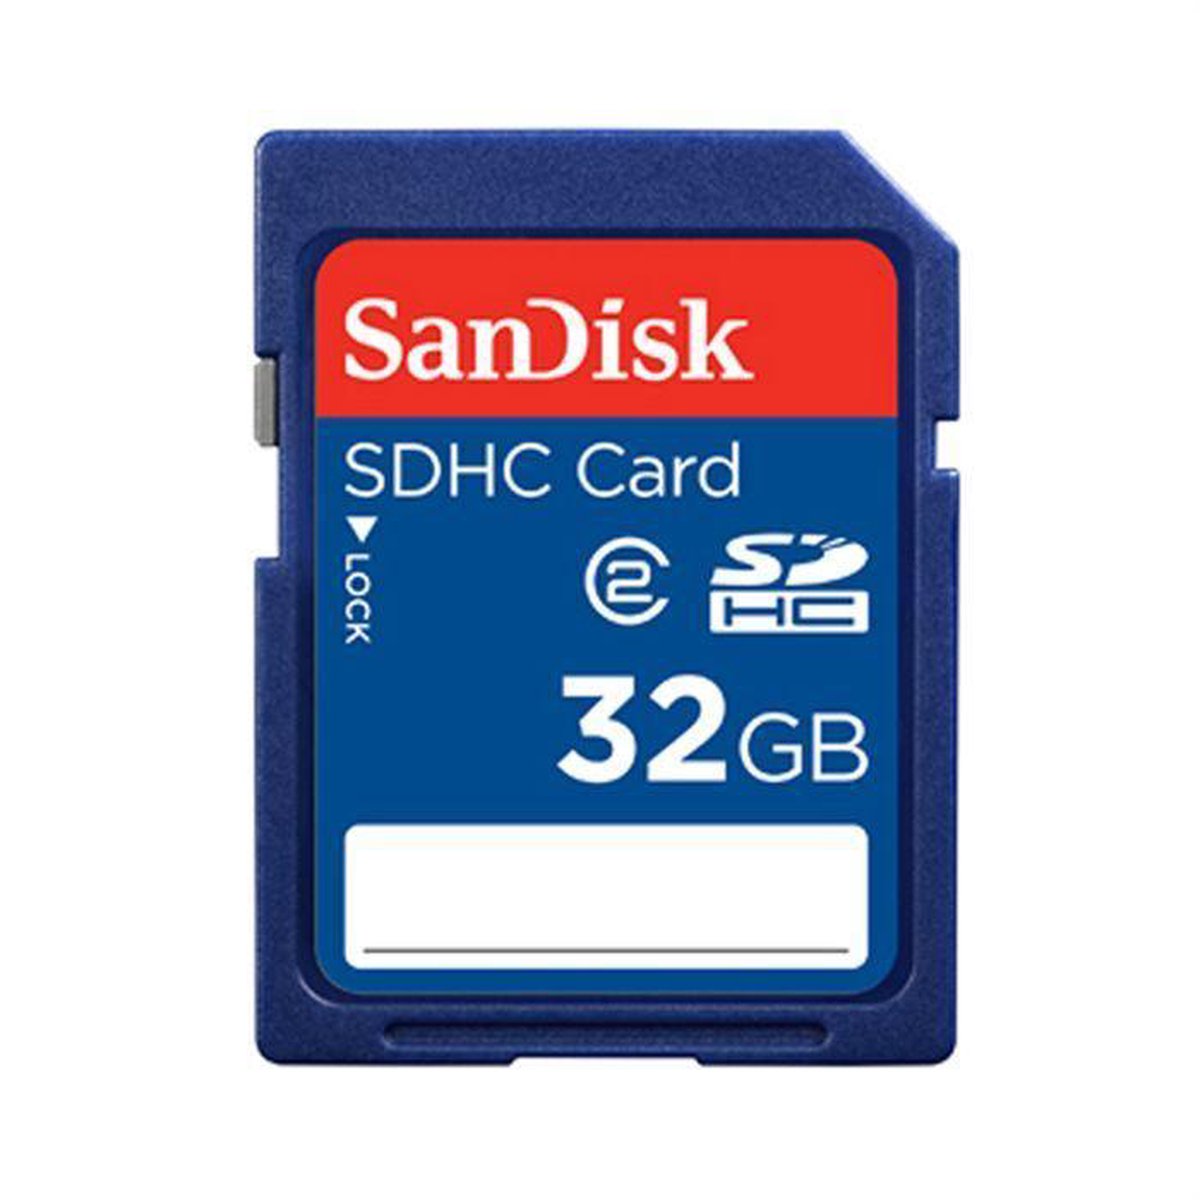 Giotto Dibondon gebrek Alfabetische volgorde SanDisk SDHC kaart 32 Gb - geheugenkaart | bol.com